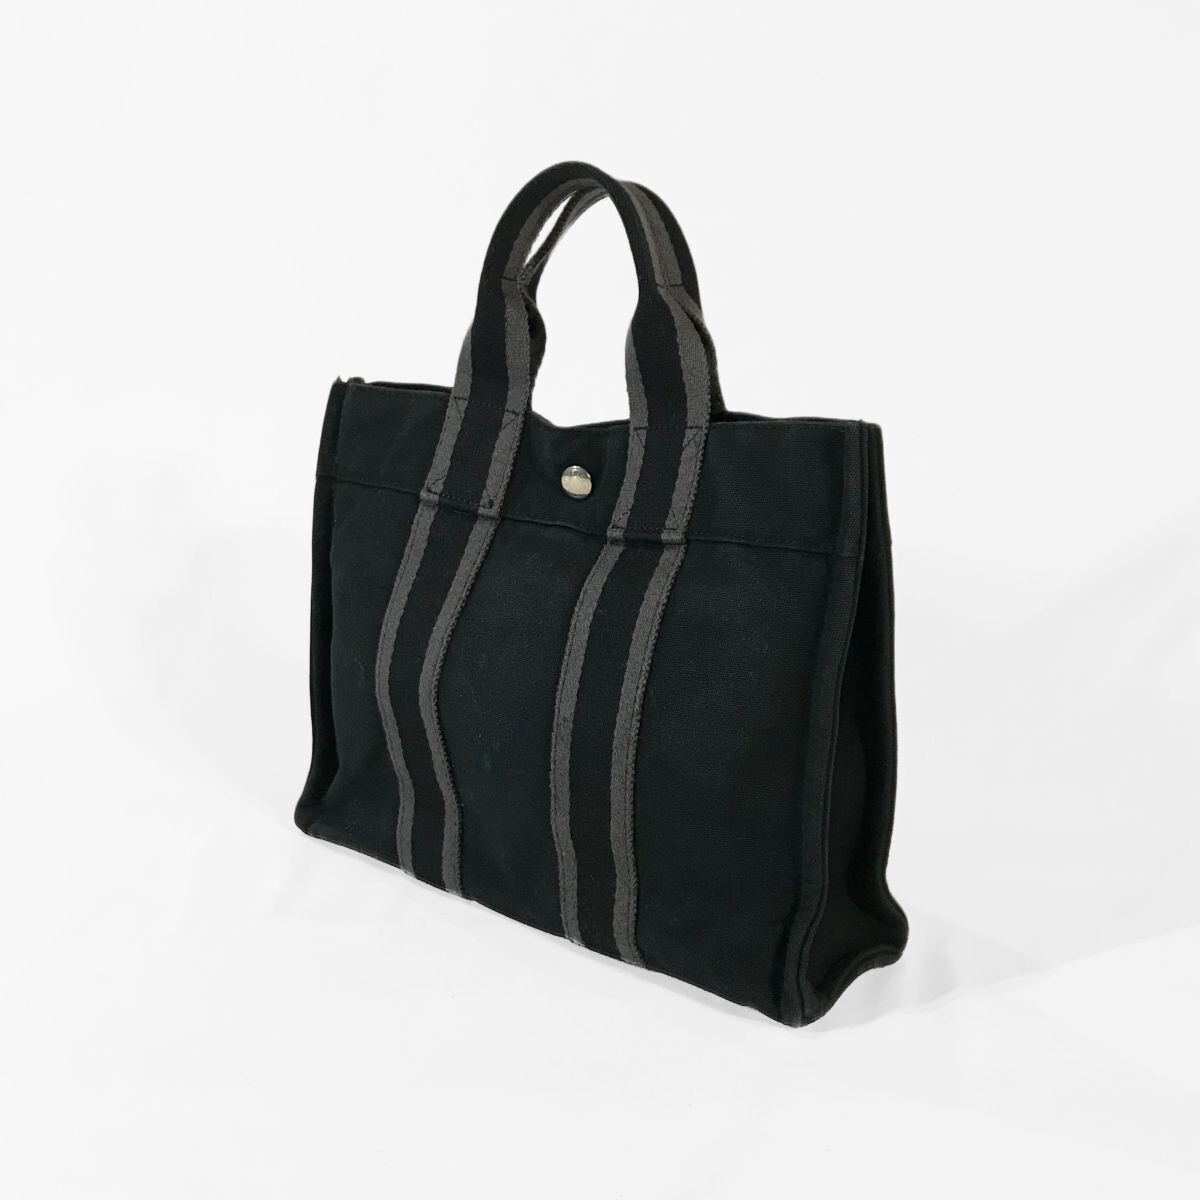 正規品 フランス製 エルメス HERMES フールトゥ キャンバス トート バッグ PM ブラックxグレー 鞄 ハンドバッグ 手提げ カバン